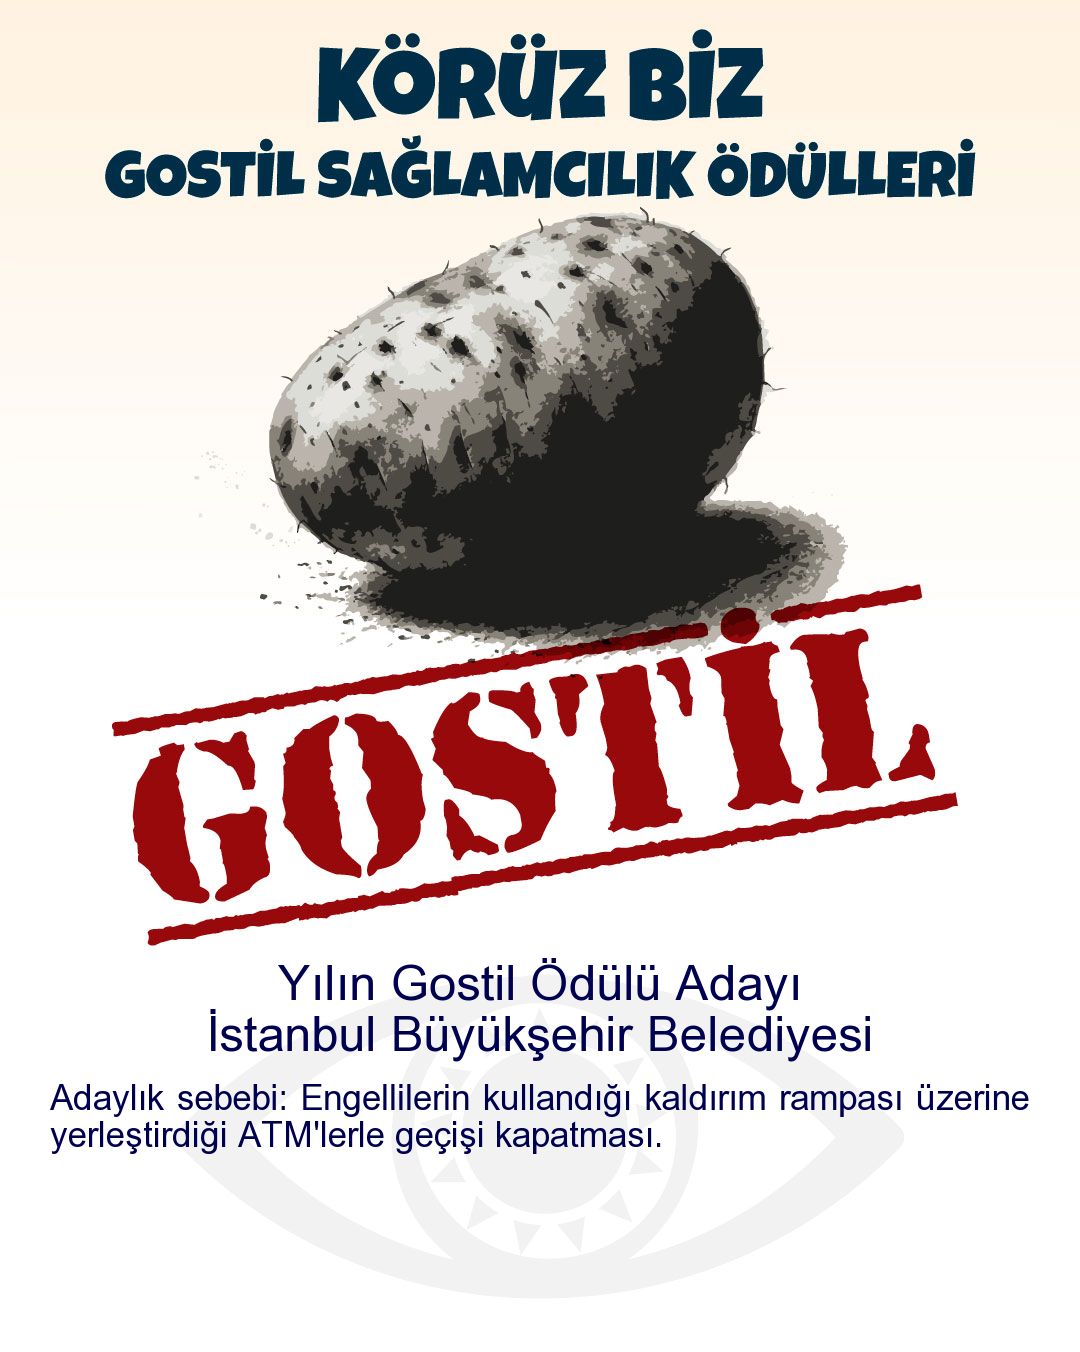 Gostil Kart: Yılın Gostil Ödülü Adayı: İstanbul Büyükşehir Belediyesi - Adaylık sebebi: Engellilerin kullandığı kaldırım rampası üzerine yerleştirdiği ATM'lerle geçişi kapatması.